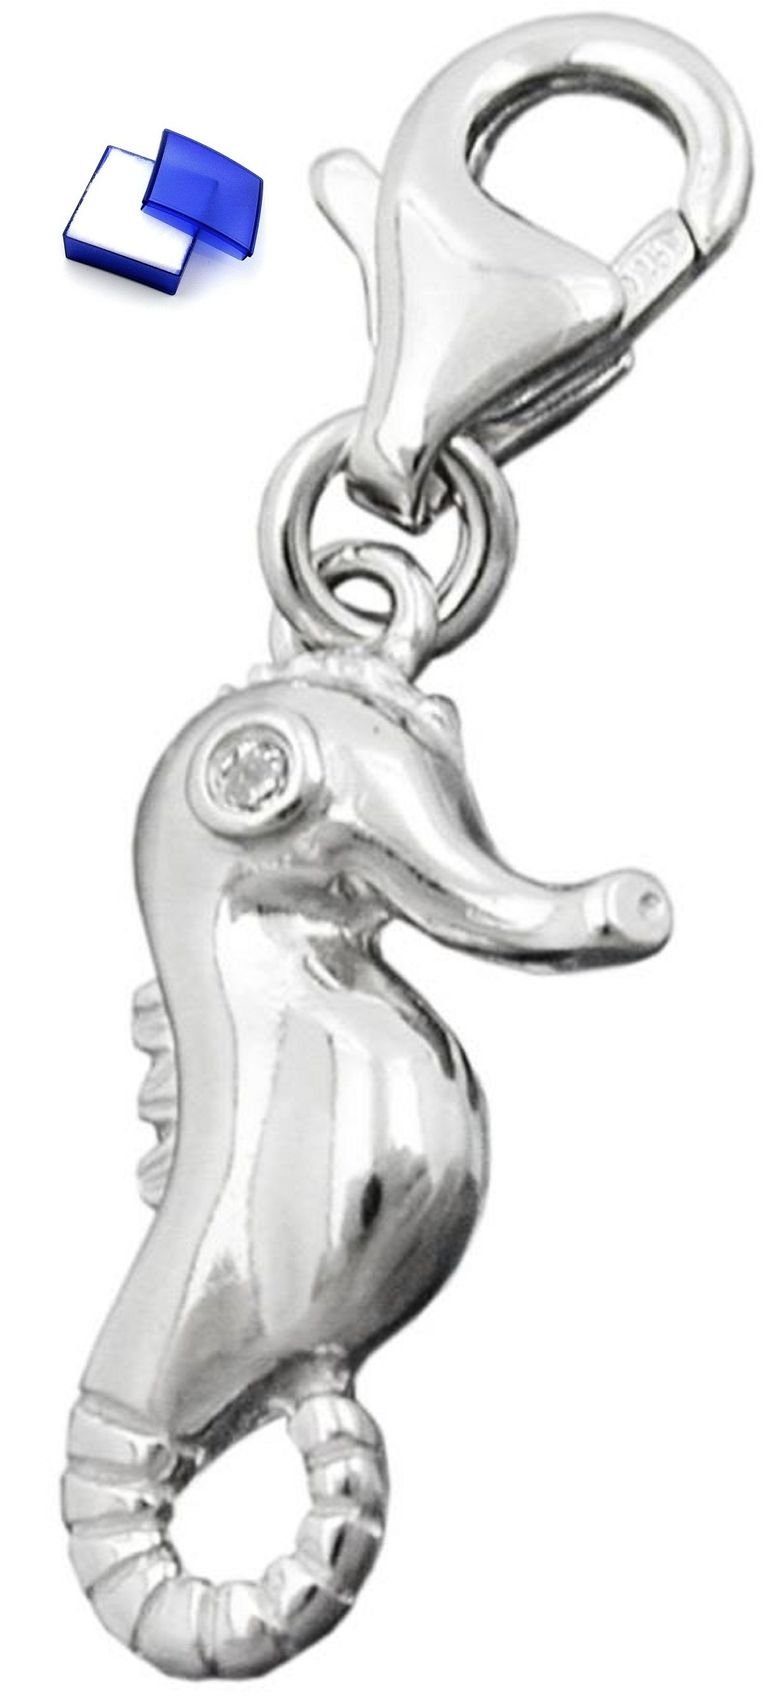 Herren Schmuck unbespielt Kettenanhänger Anhänger Charm Seepferdchen mit Zirkonia glänzend rhodiniert 925 Silber 16 x 8 mm inkl.